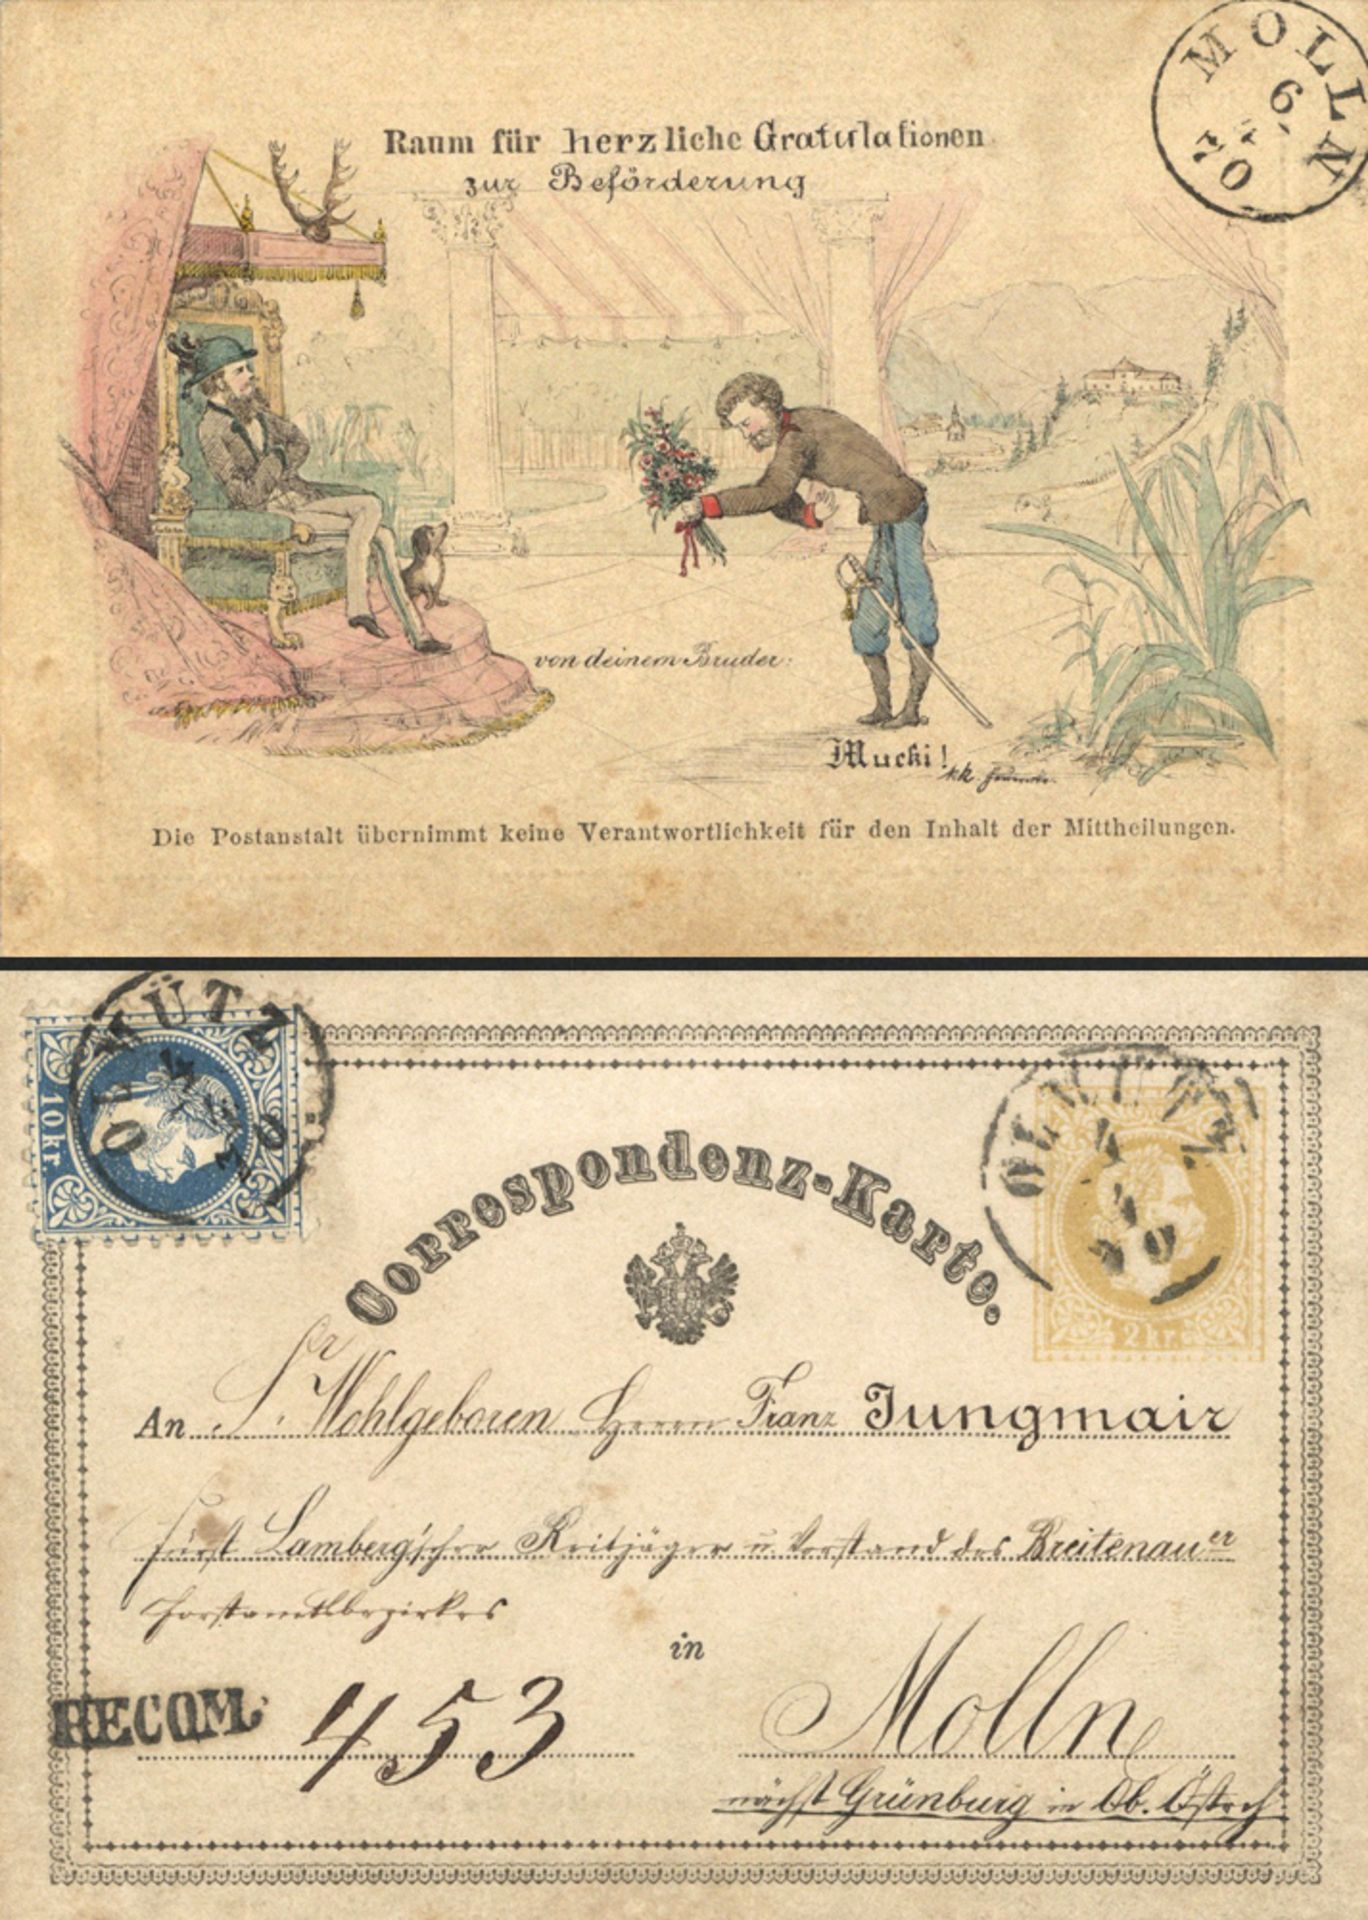 Vorläufer 1870 Die älteste bekannte bebilderte offizielle Postkarte der Welt. Österreichische